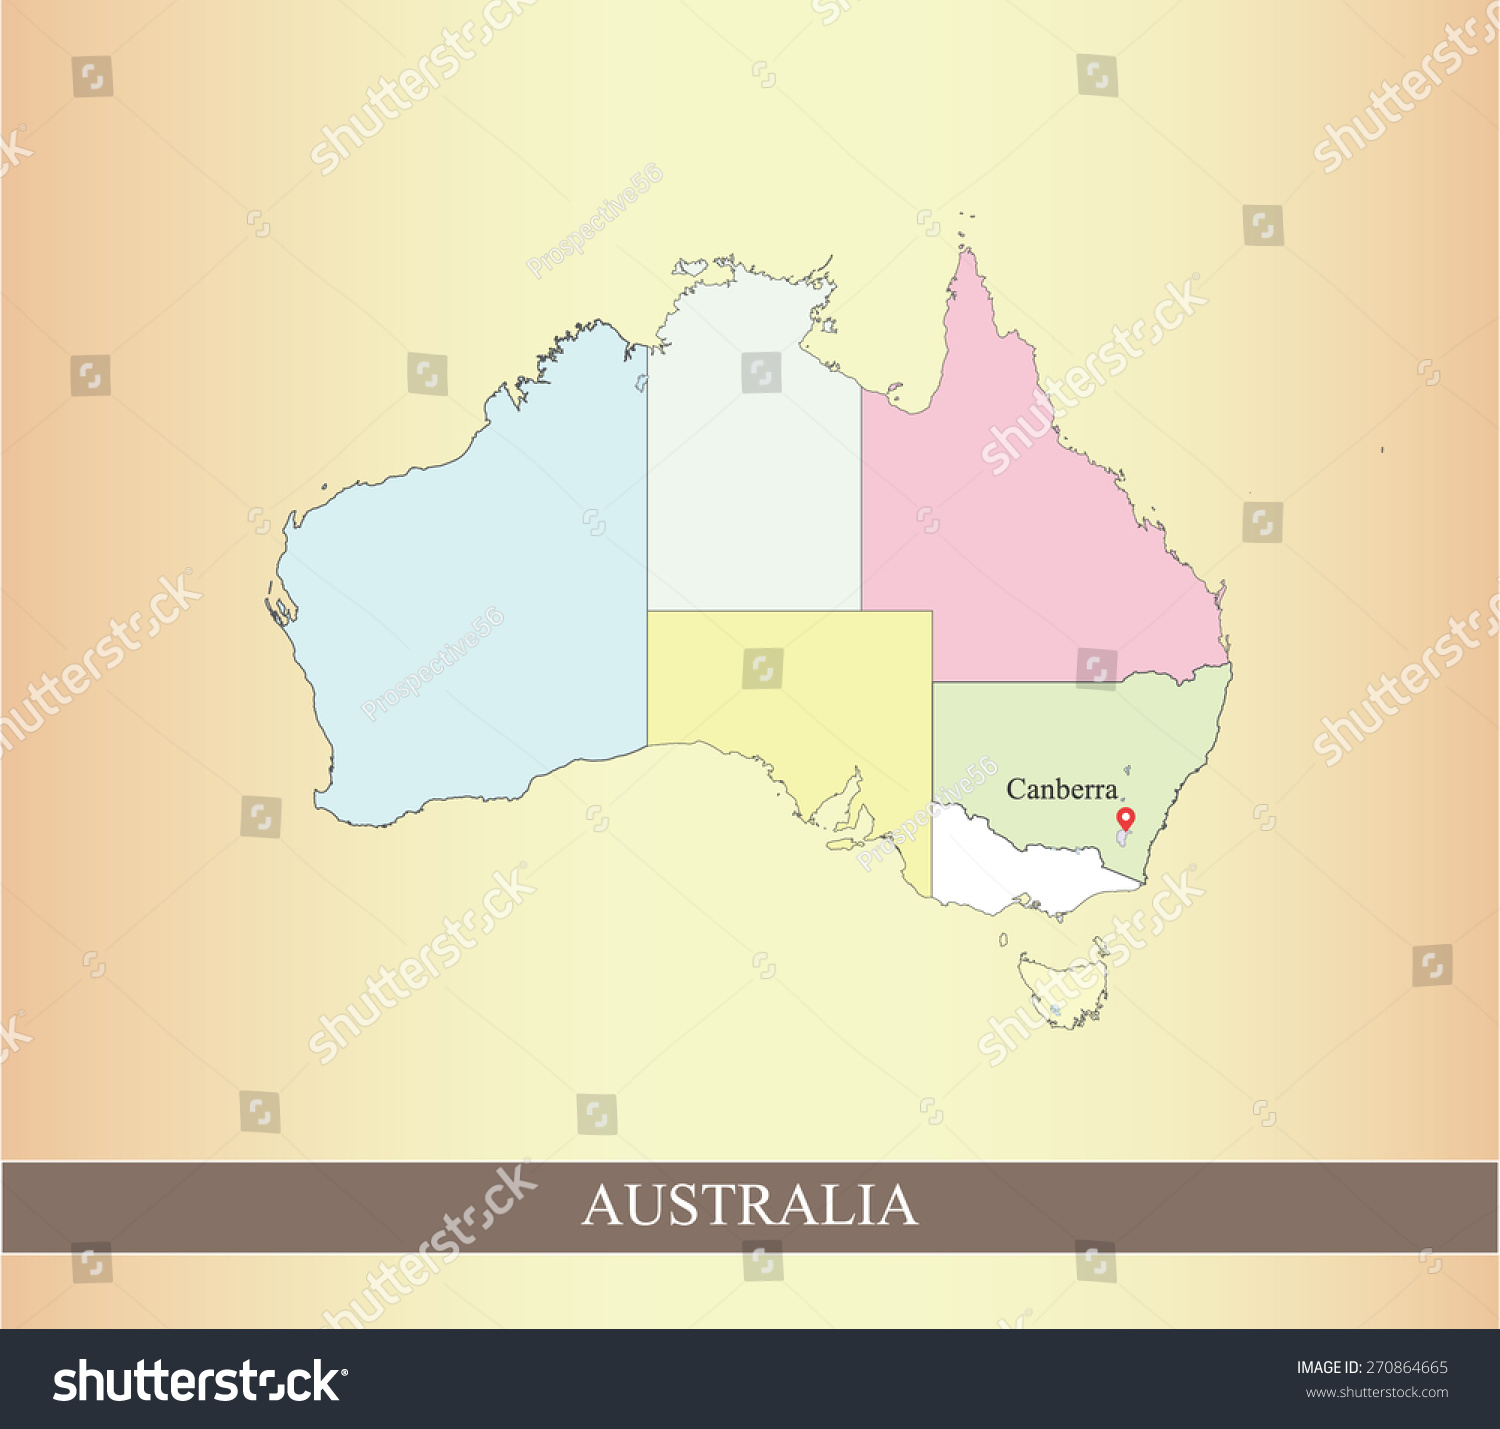 澳大利亚地图在黑色和白色背景下,澳大利亚地